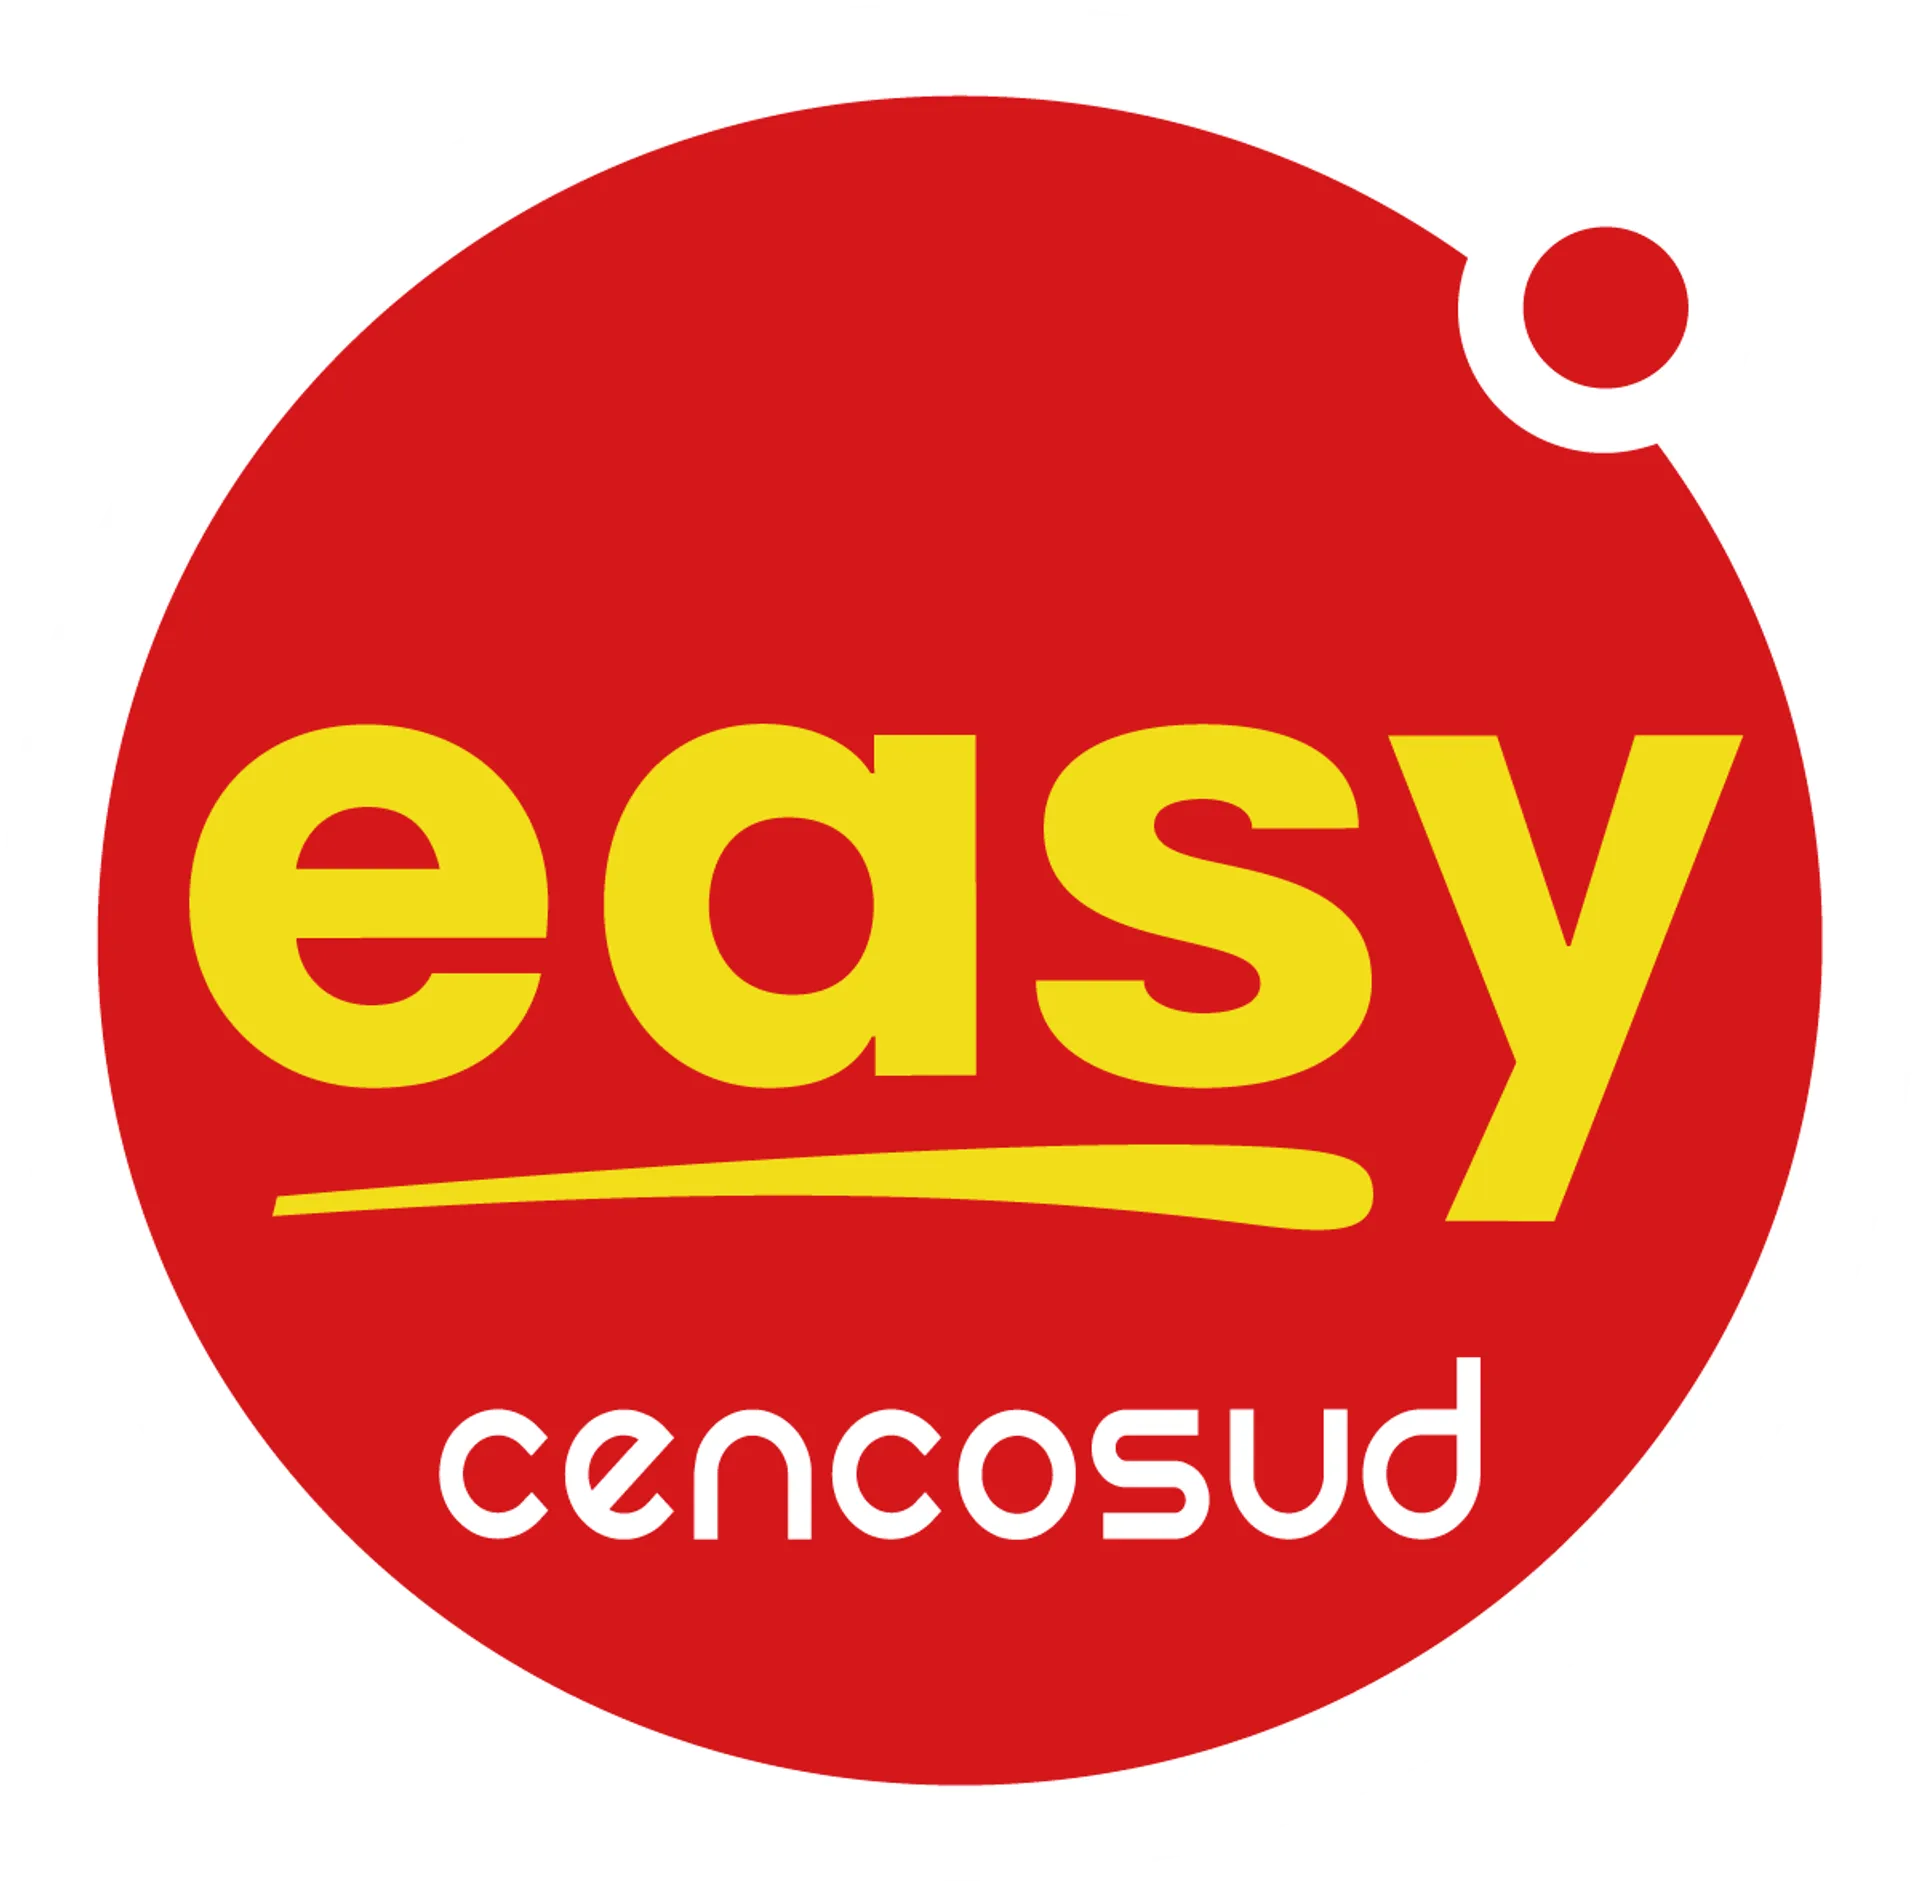 EASY logo